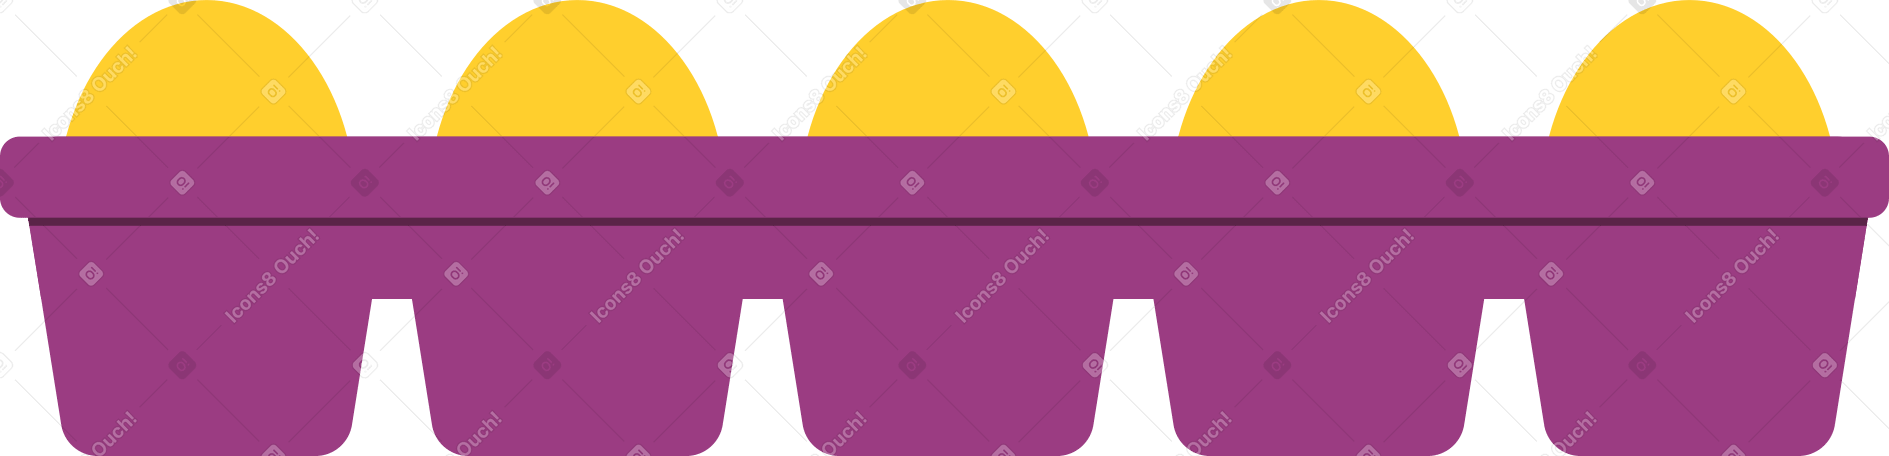 egg box Illustration in PNG, SVG